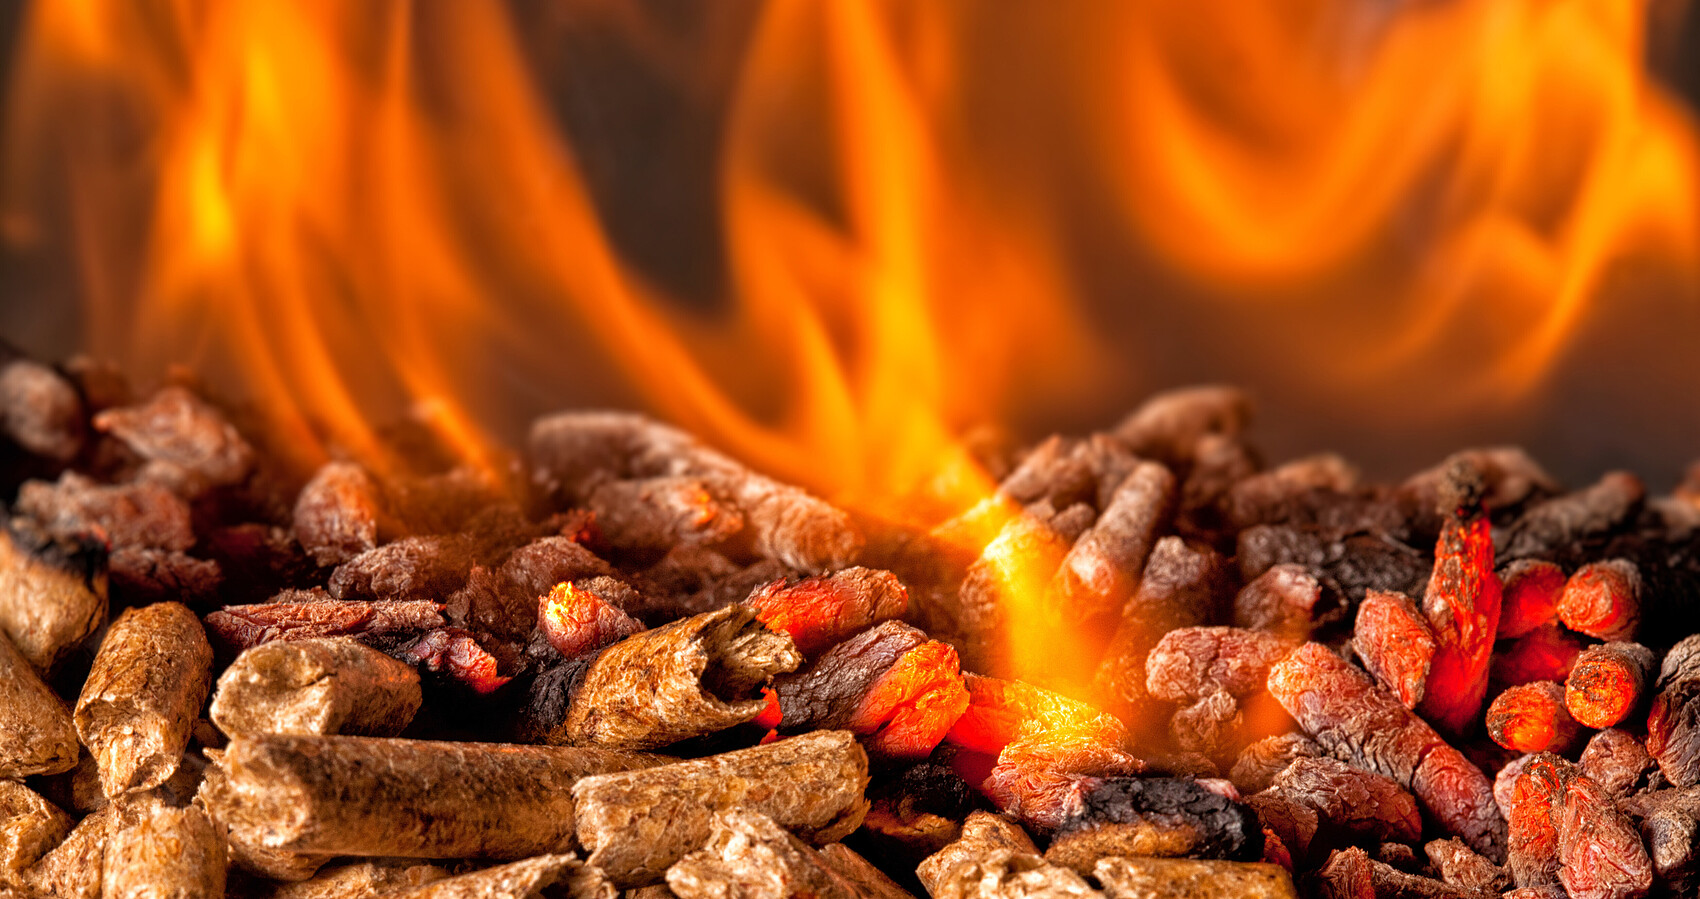 Das Bild zeigt brennende Holzpellets mit orangeroter Flamme